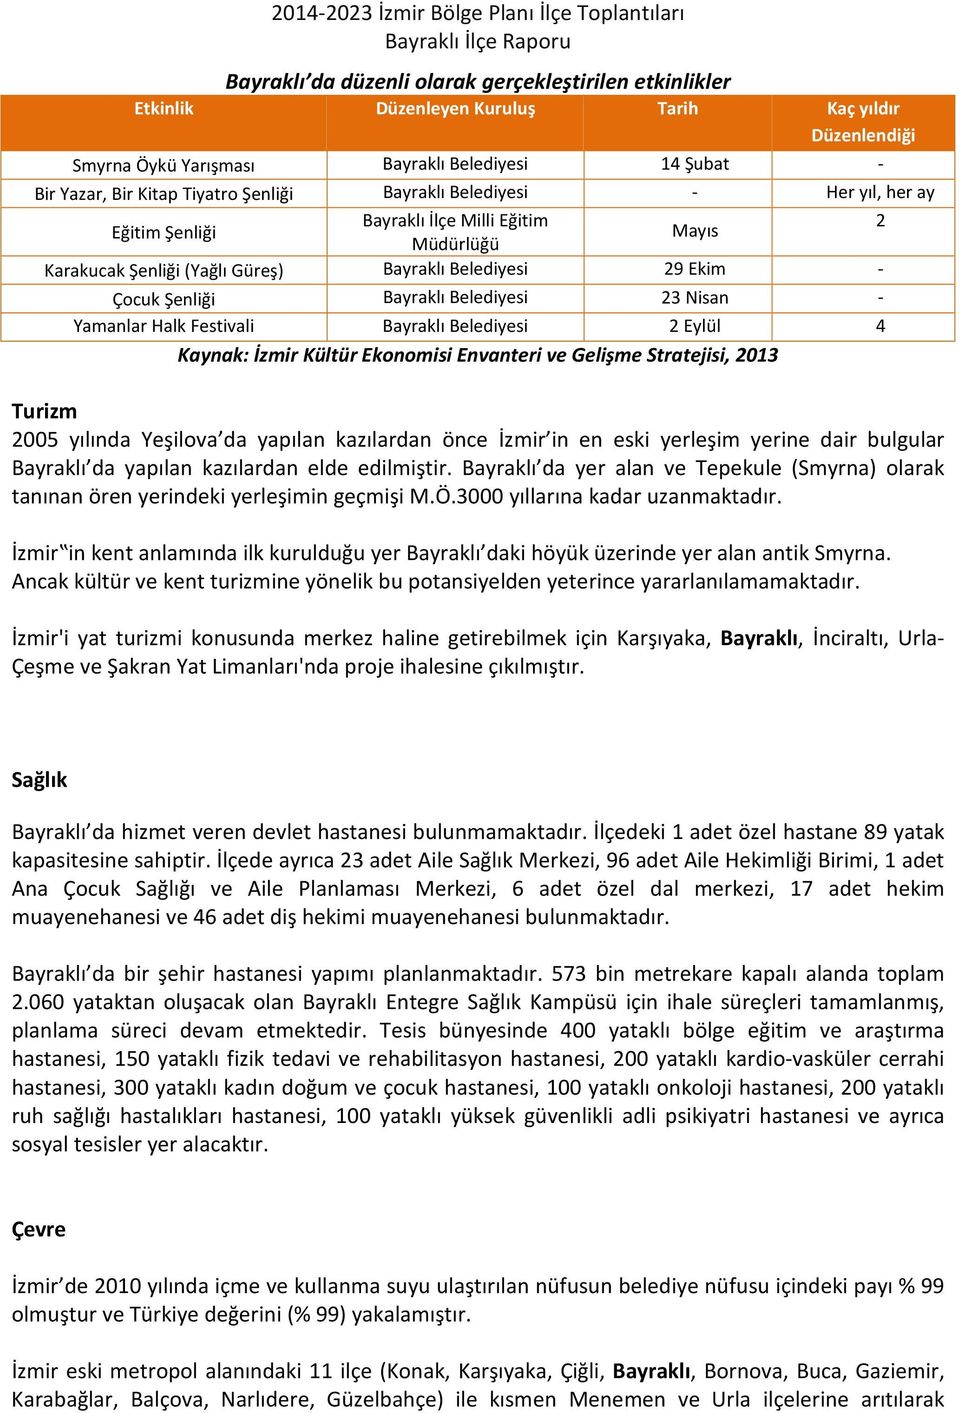 Belediyesi 23 Nisan - Yamanlar Halk Festivali Bayraklı Belediyesi 2 Eylül 4 Kaynak: İzmir Kültür Ekonomisi Envanteri ve Gelişme Stratejisi, 2013 Turizm 2005 yılında Yeşilova da yapılan kazılardan